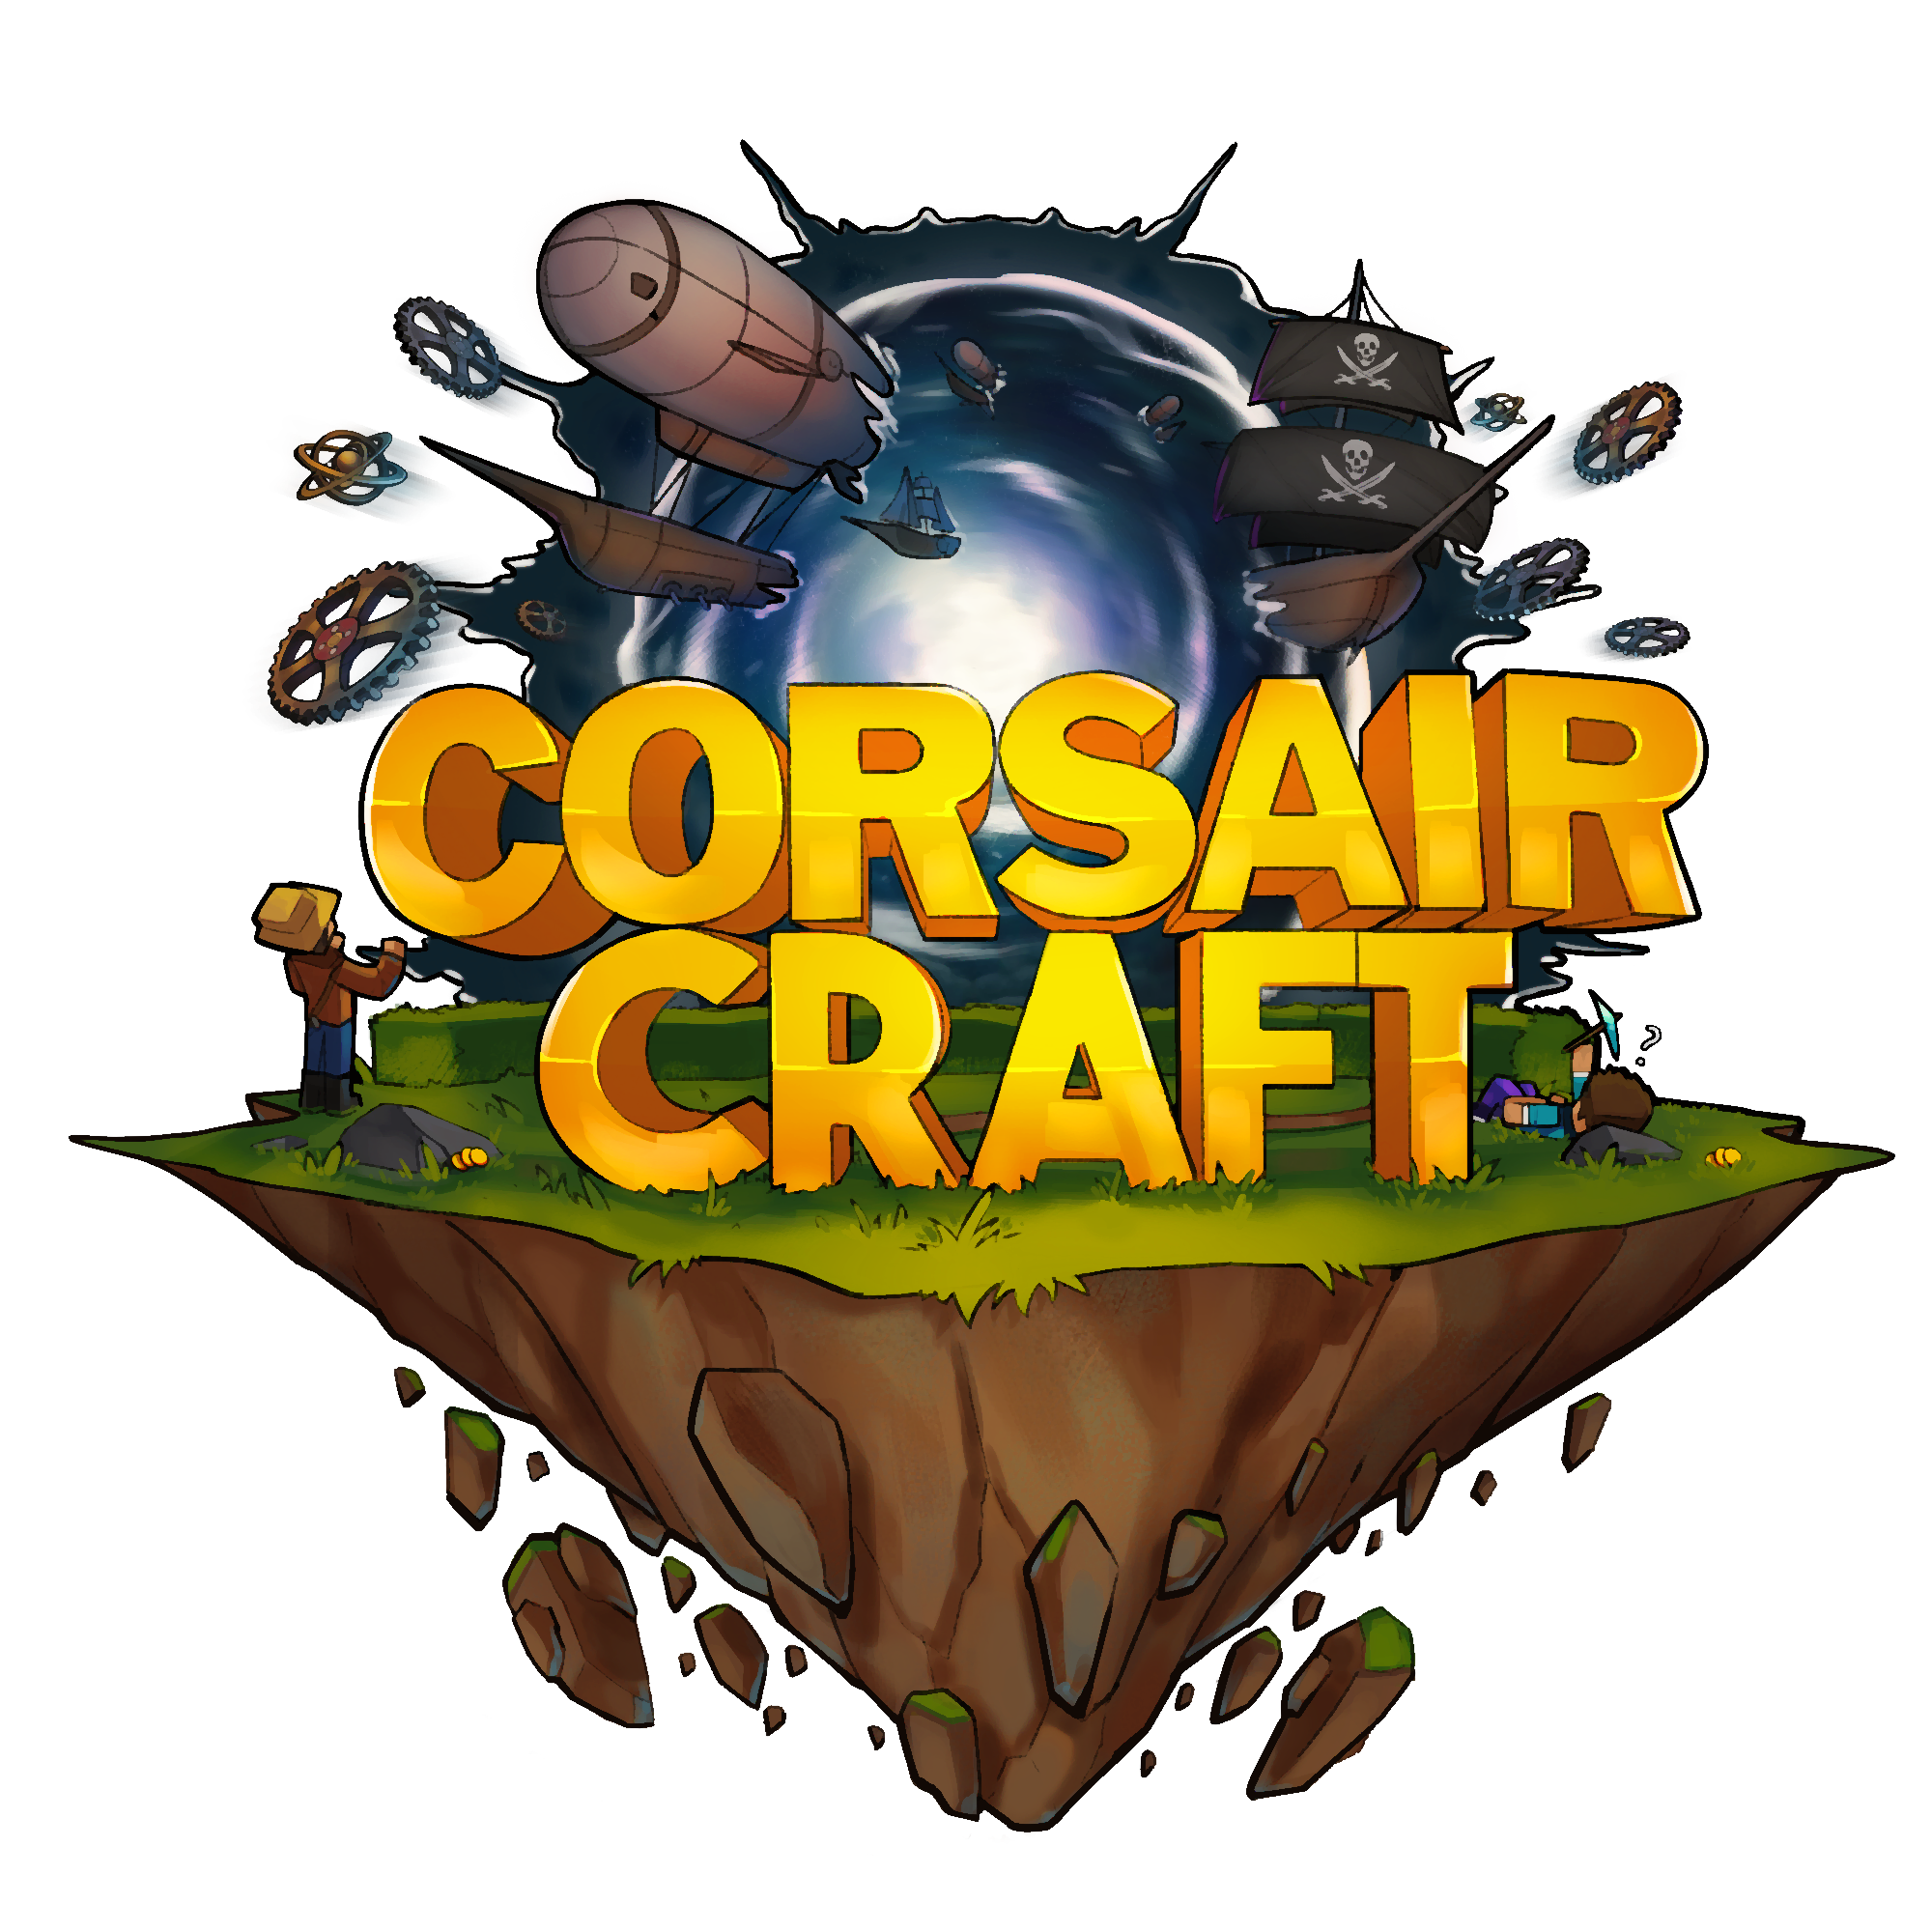 PirateCraft Wiki Badge